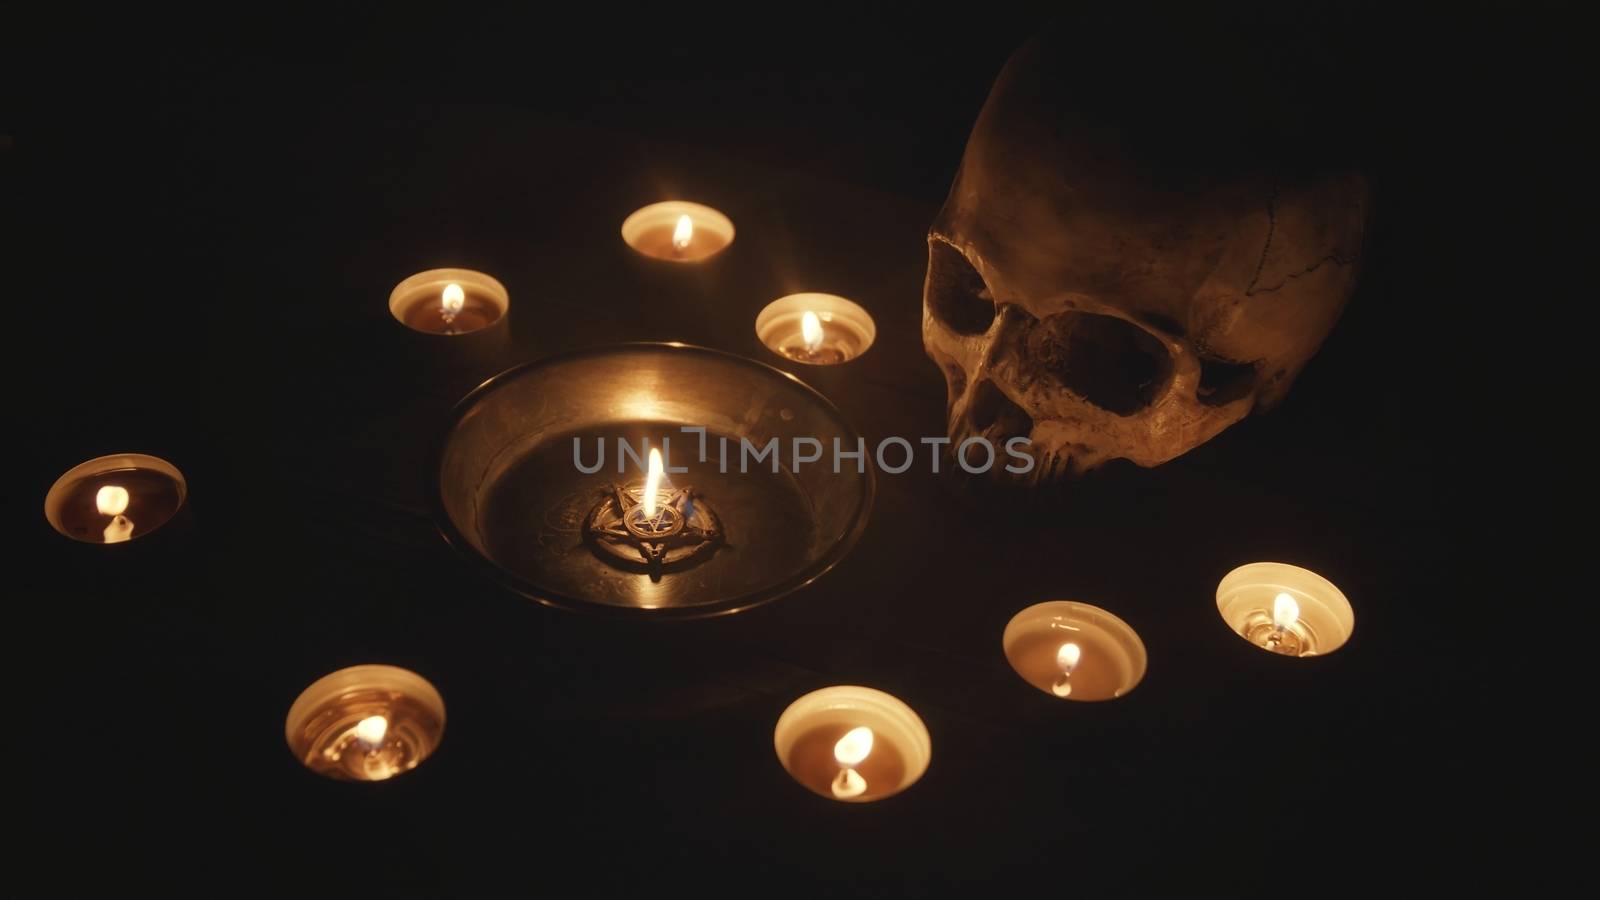 Burning pentacle on altar close up photo